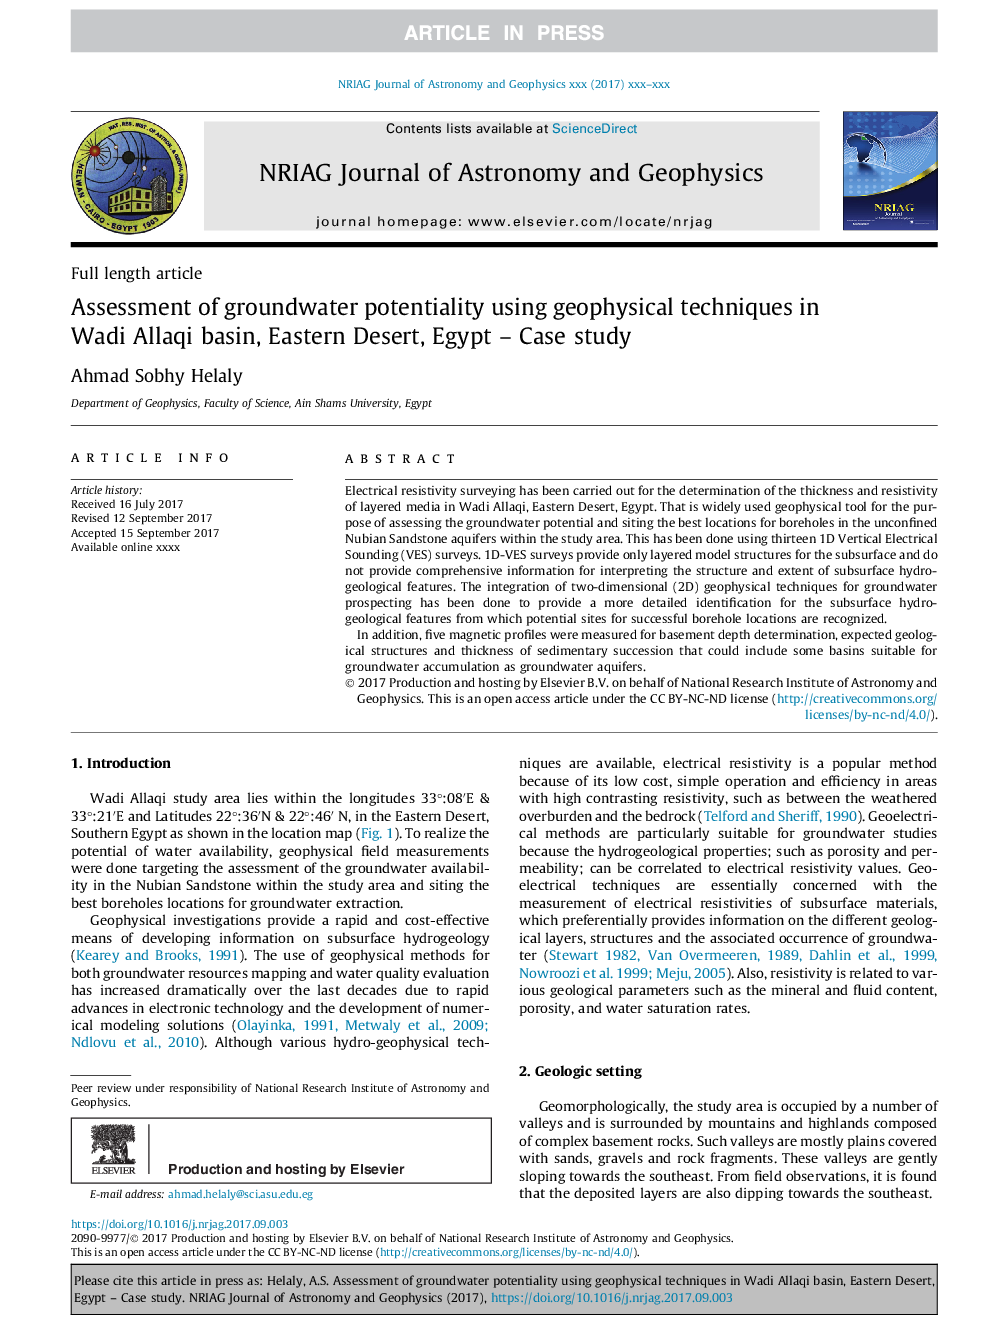 ارزیابی قابلیت های آب زیرزمینی با استفاده از تکنیک های ژئوفیزیکی در حوضه وادی اللهی، صحرای شرقی، مصر - مطالعه موردی 